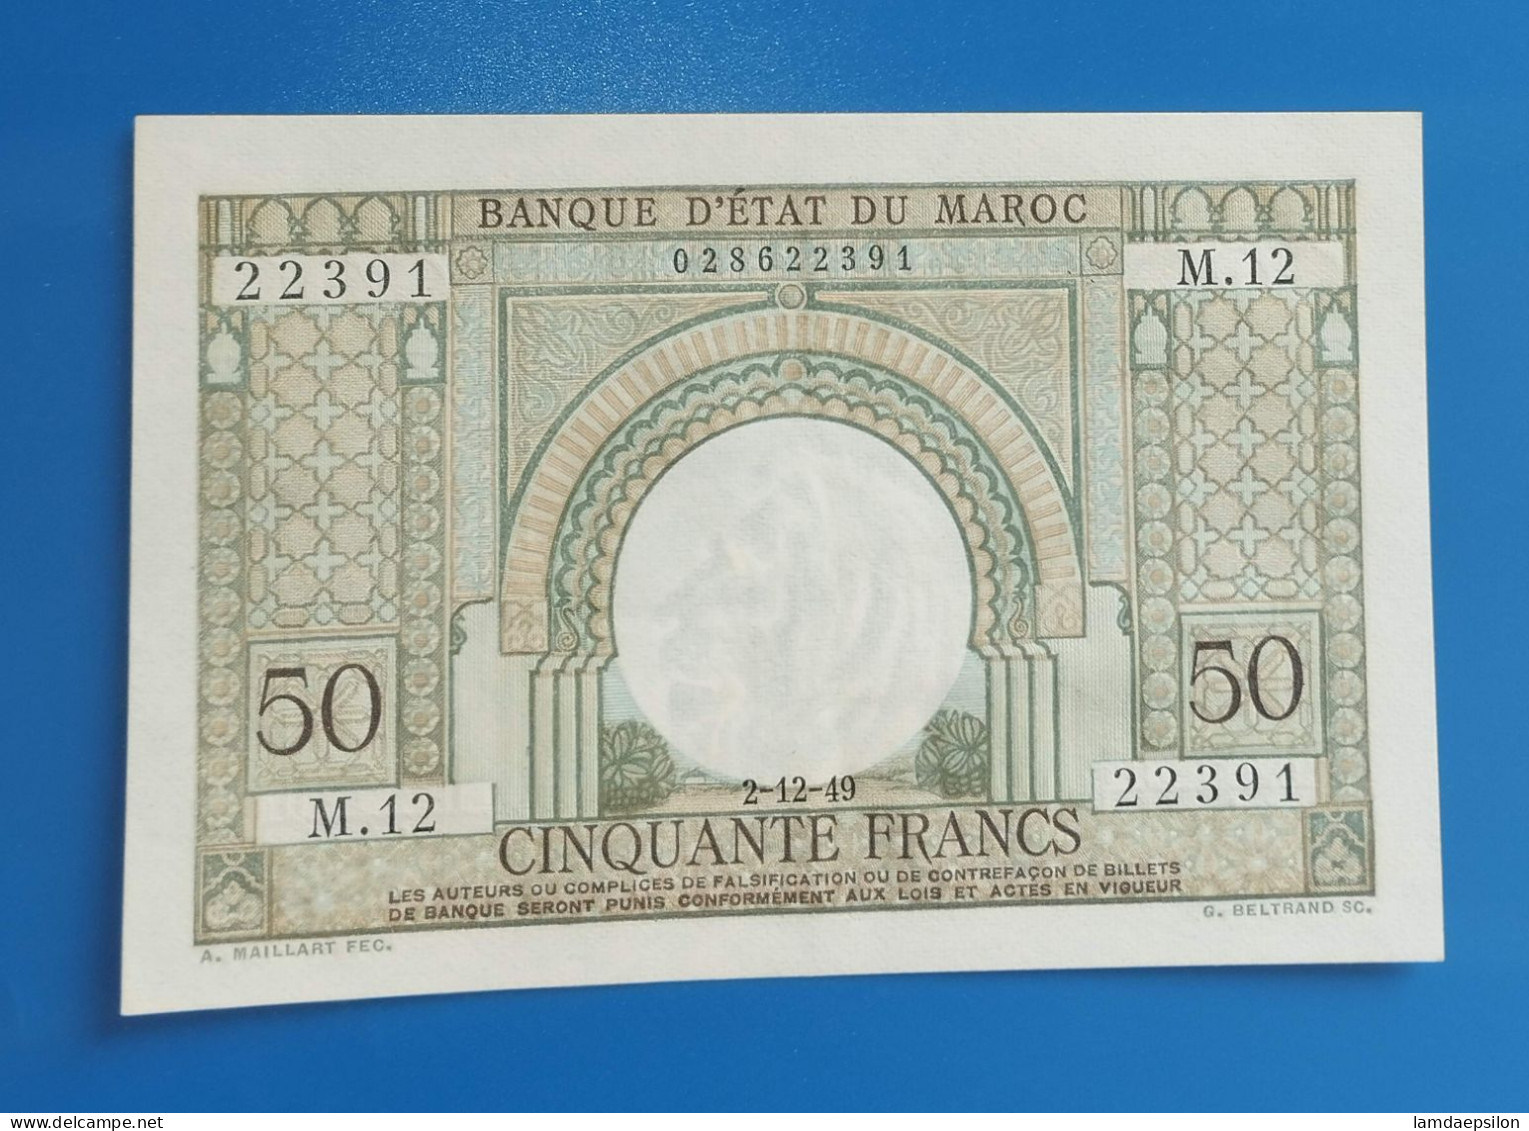 MAROC MOROCCO MARRUECOS MAROKKO BANQUE D'ETAT 50 FRANC 1949 AUNC - Maroc